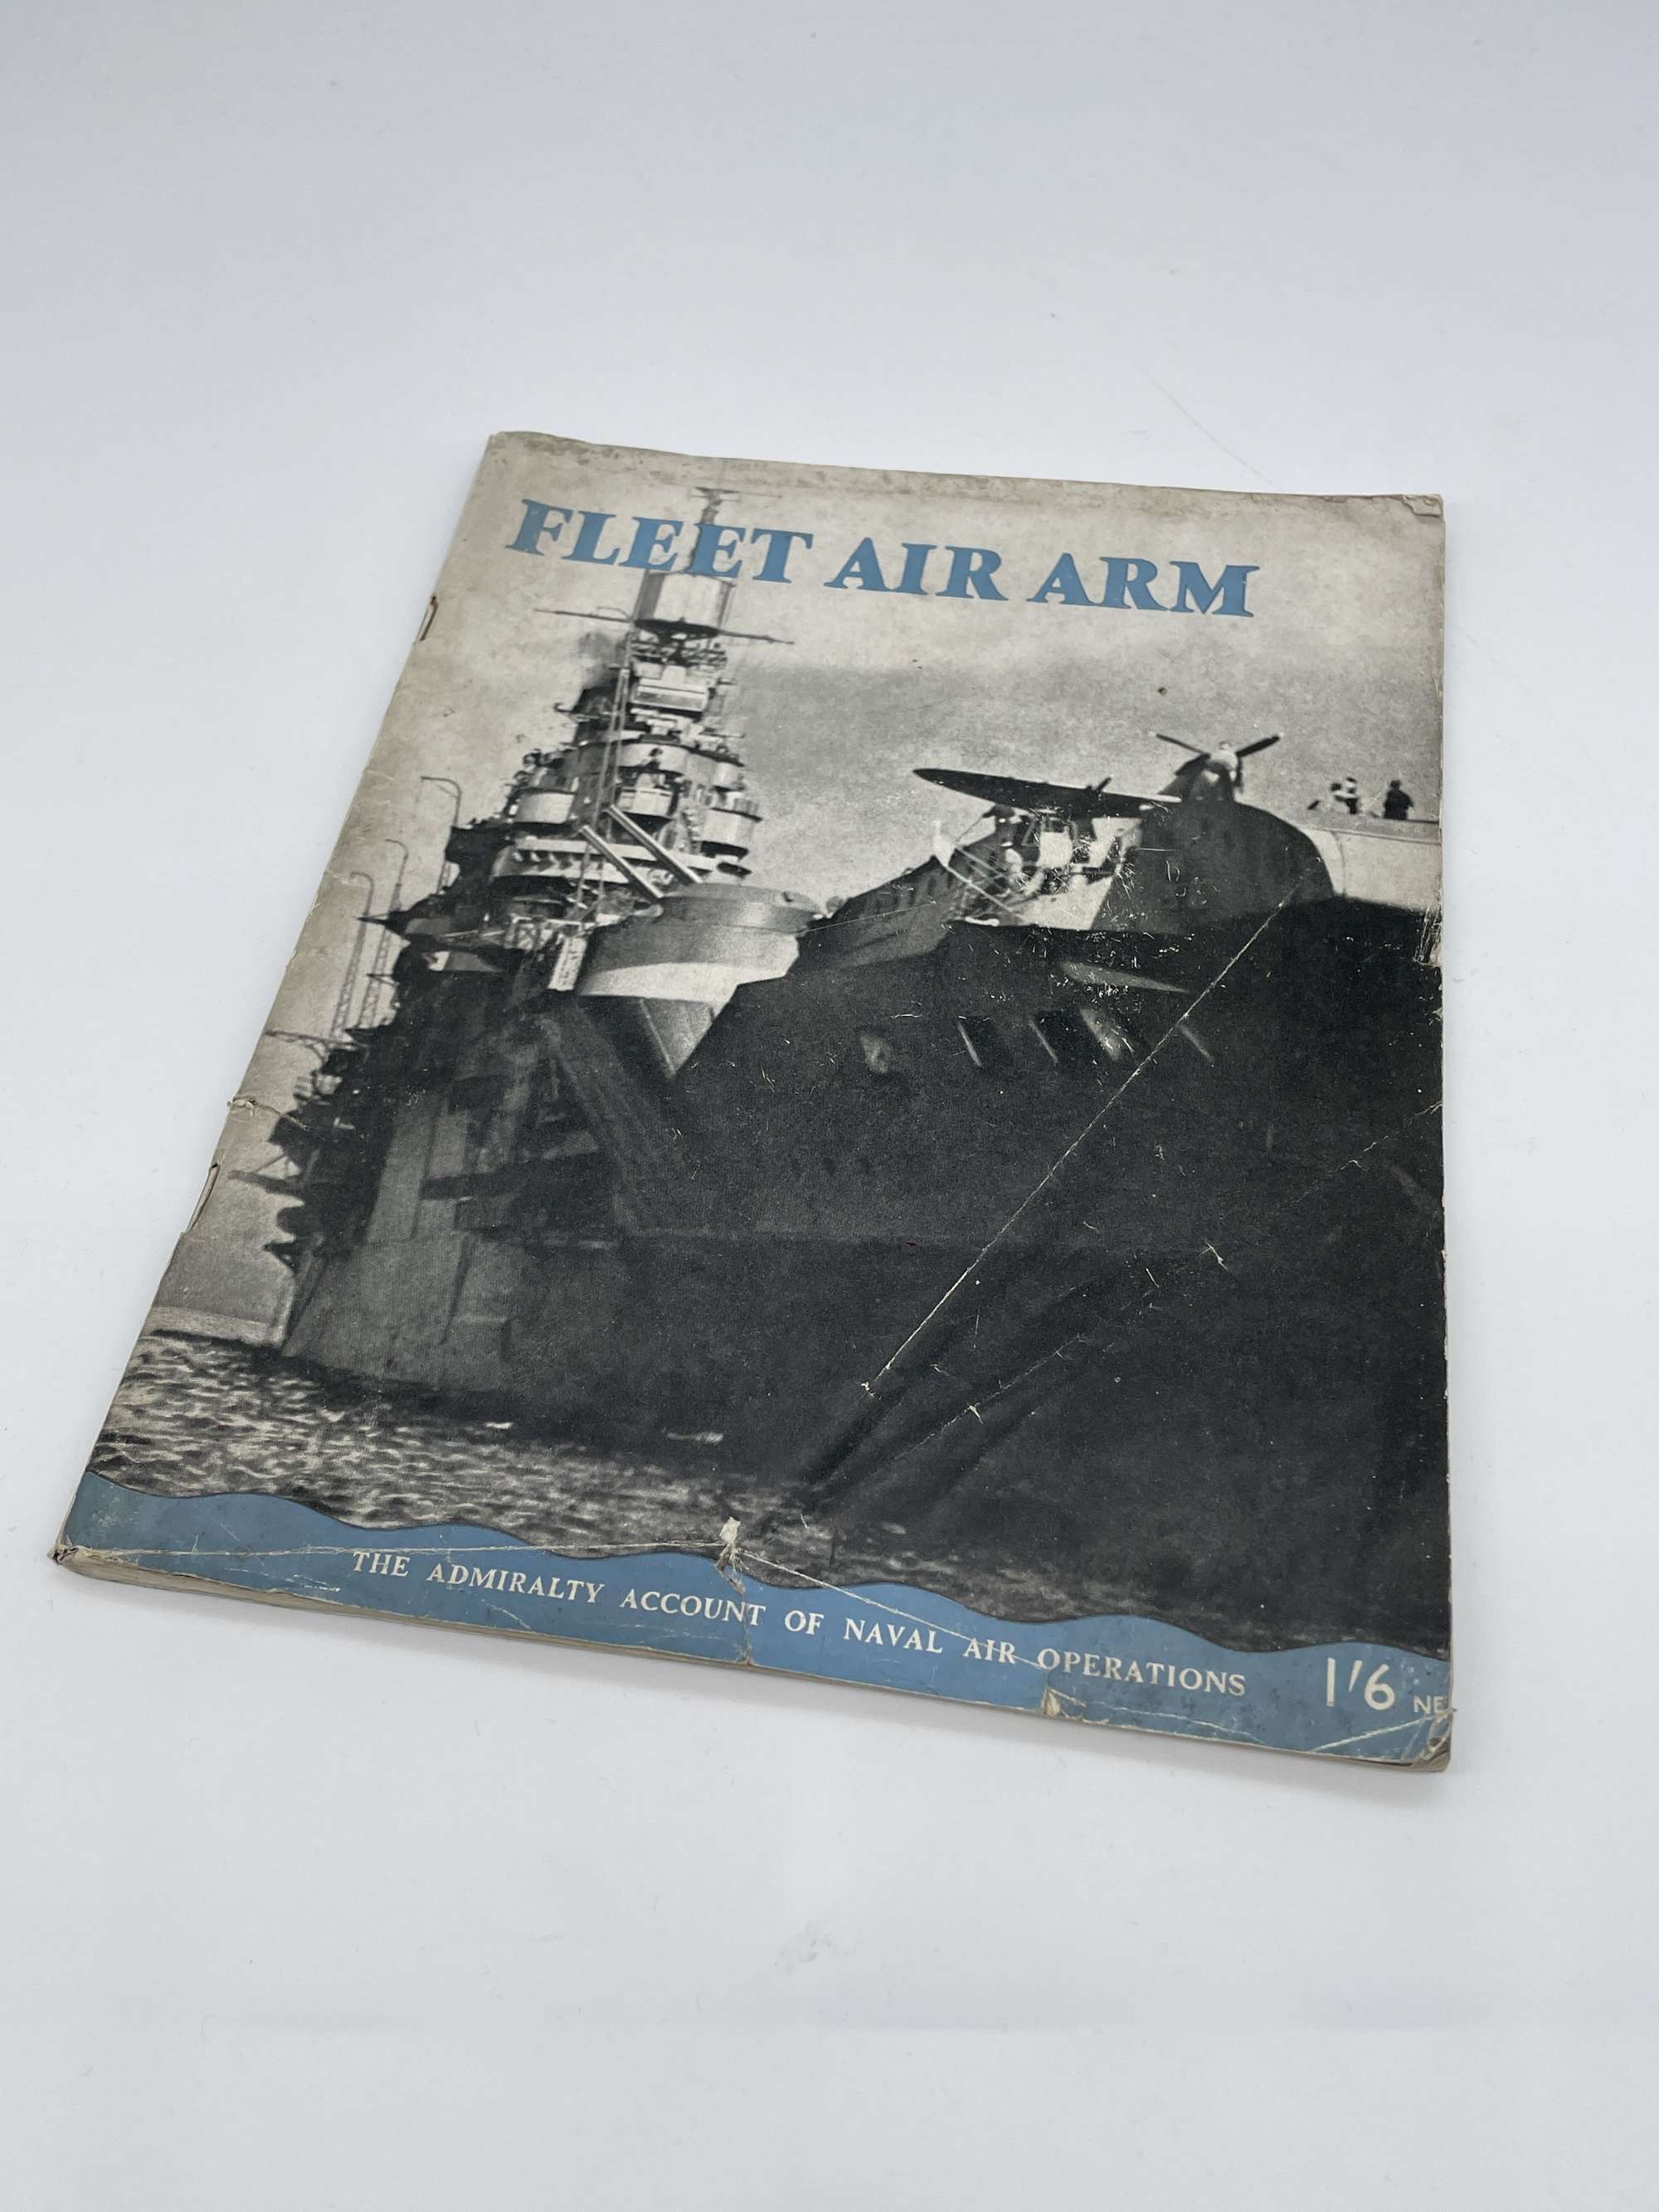 Original 1943 Dated Book, Fleet Air Arm, 